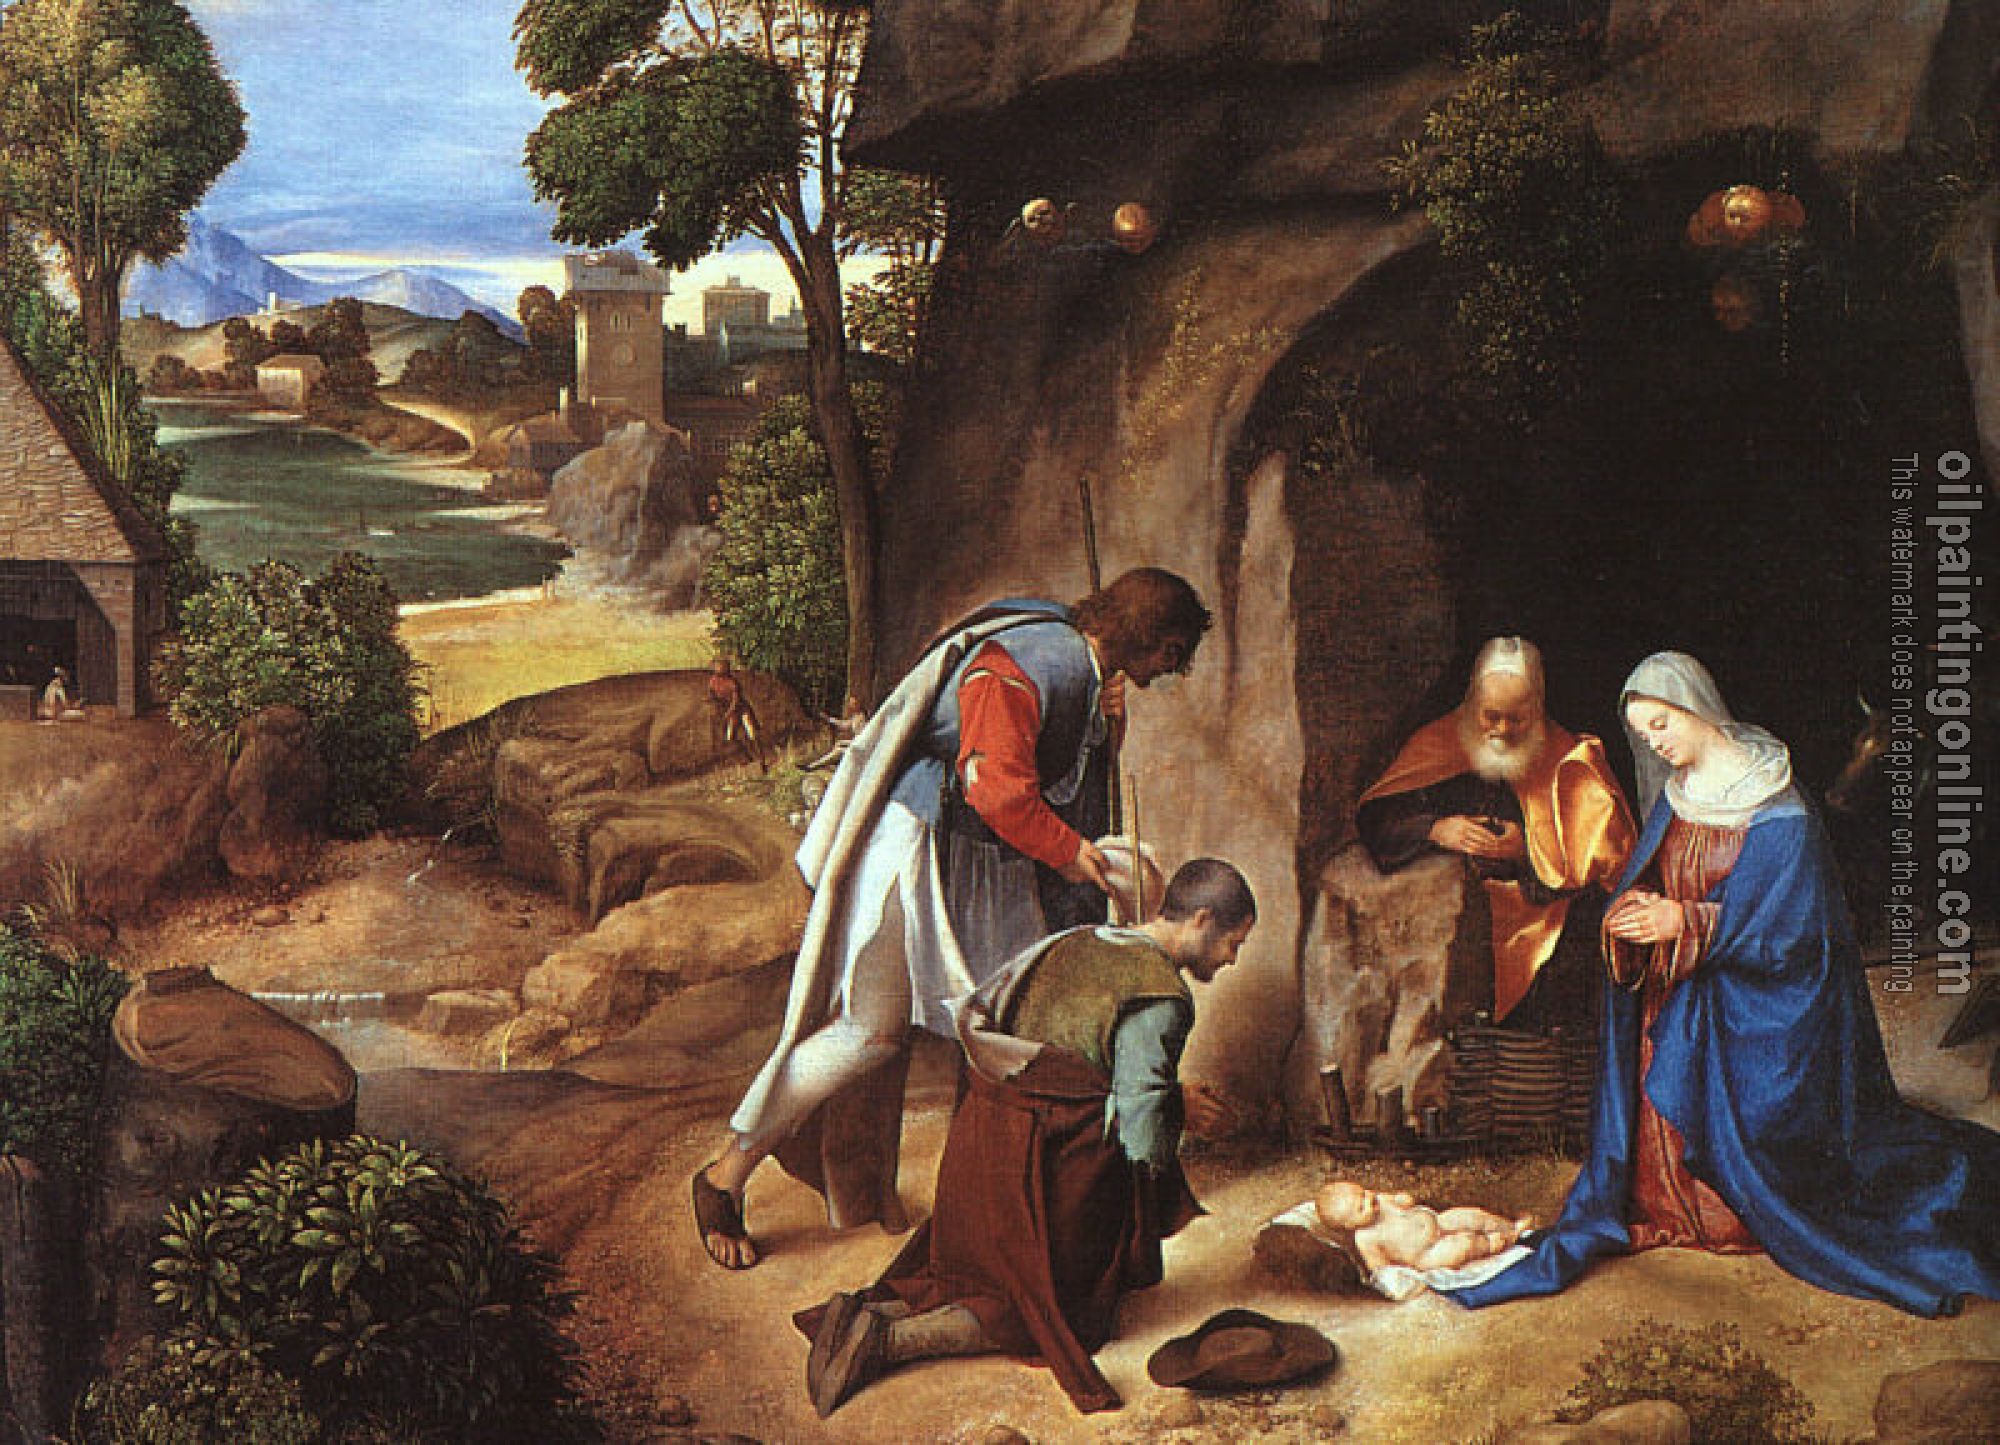 Giorgione - Adoration of the Shepherds